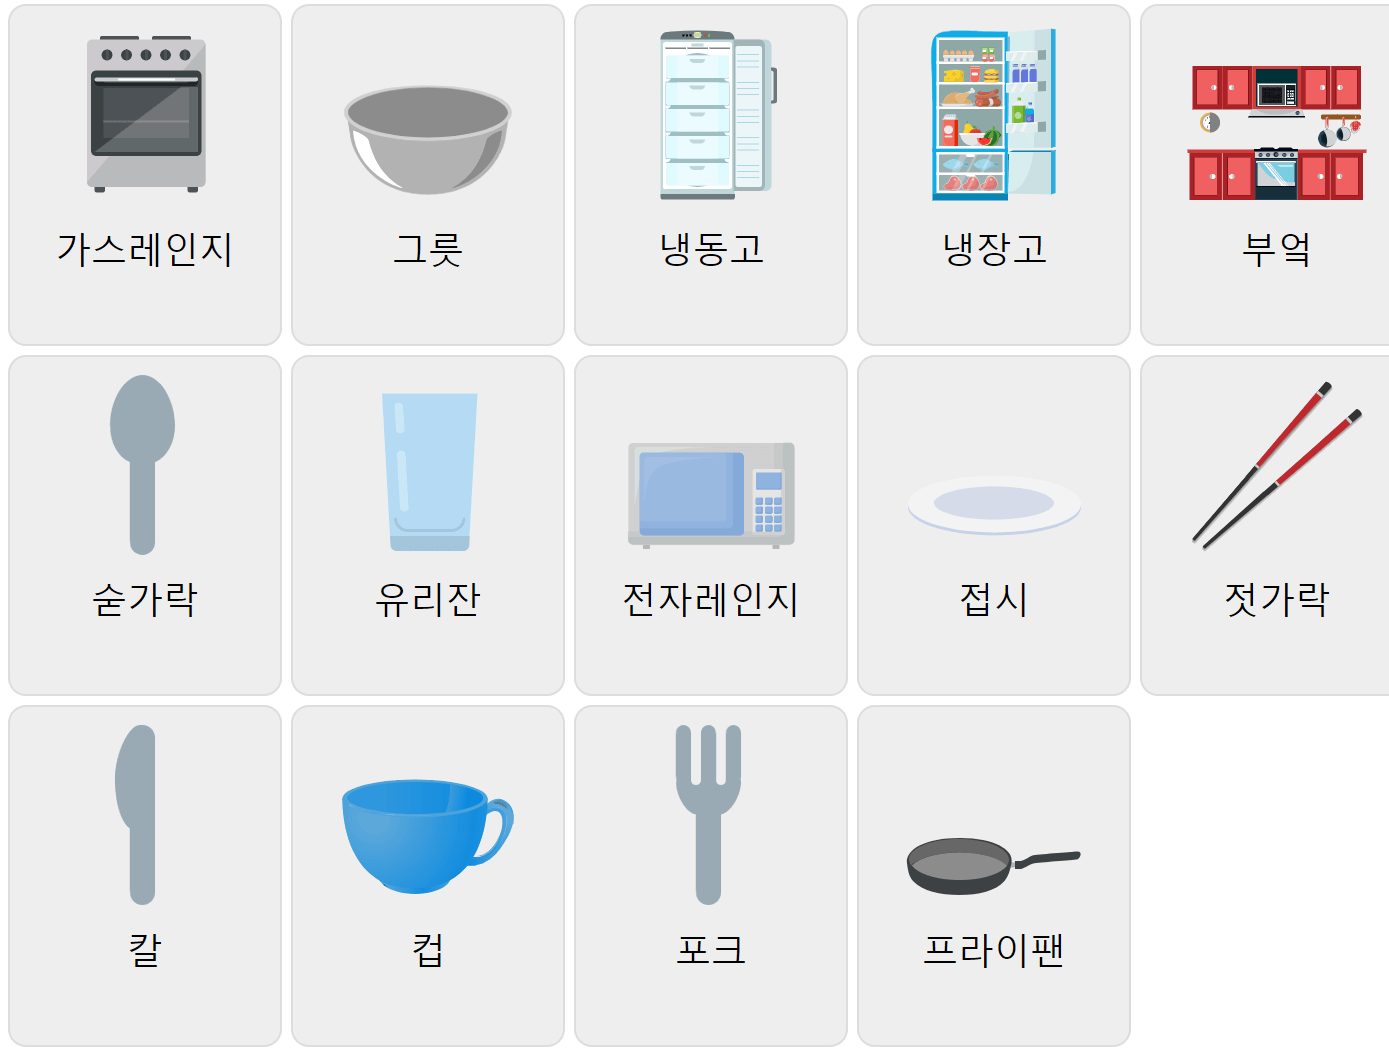 Кухонная лексика на корейском языке